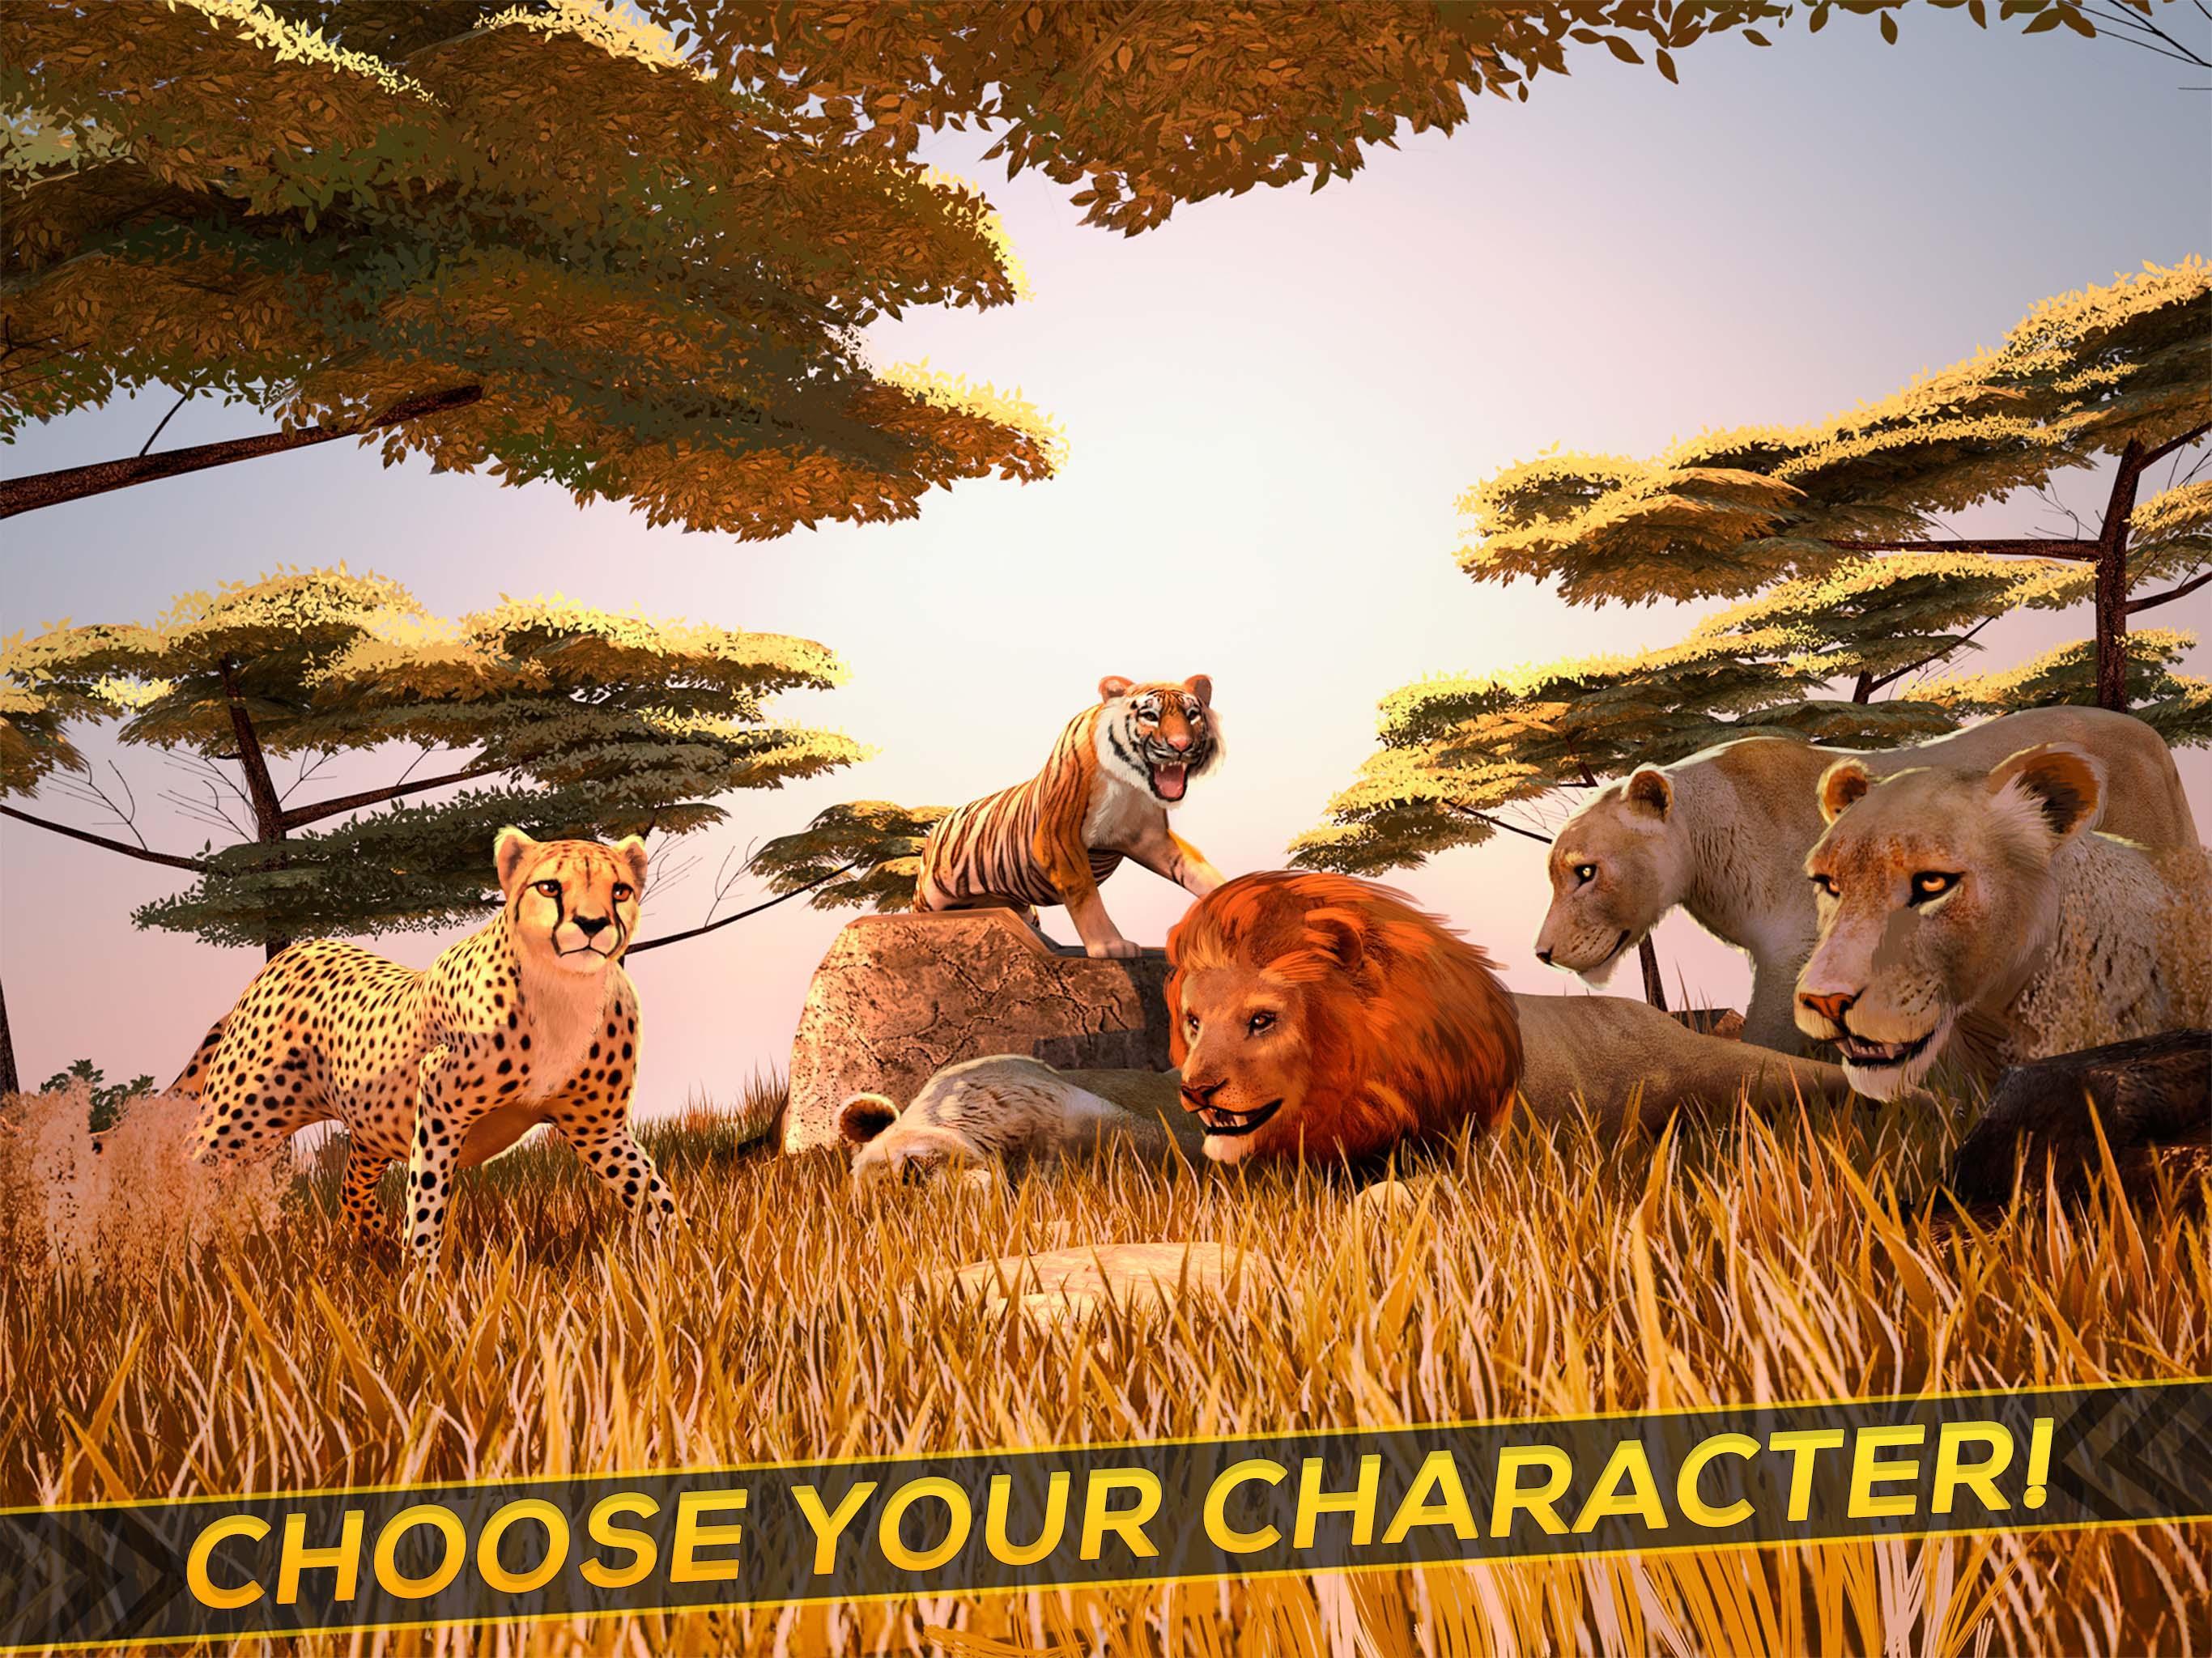 Wild animals игра. Лучшие симуляторы животных на андроид. Звериный тройничок в диких условиях из игры Wild Life.